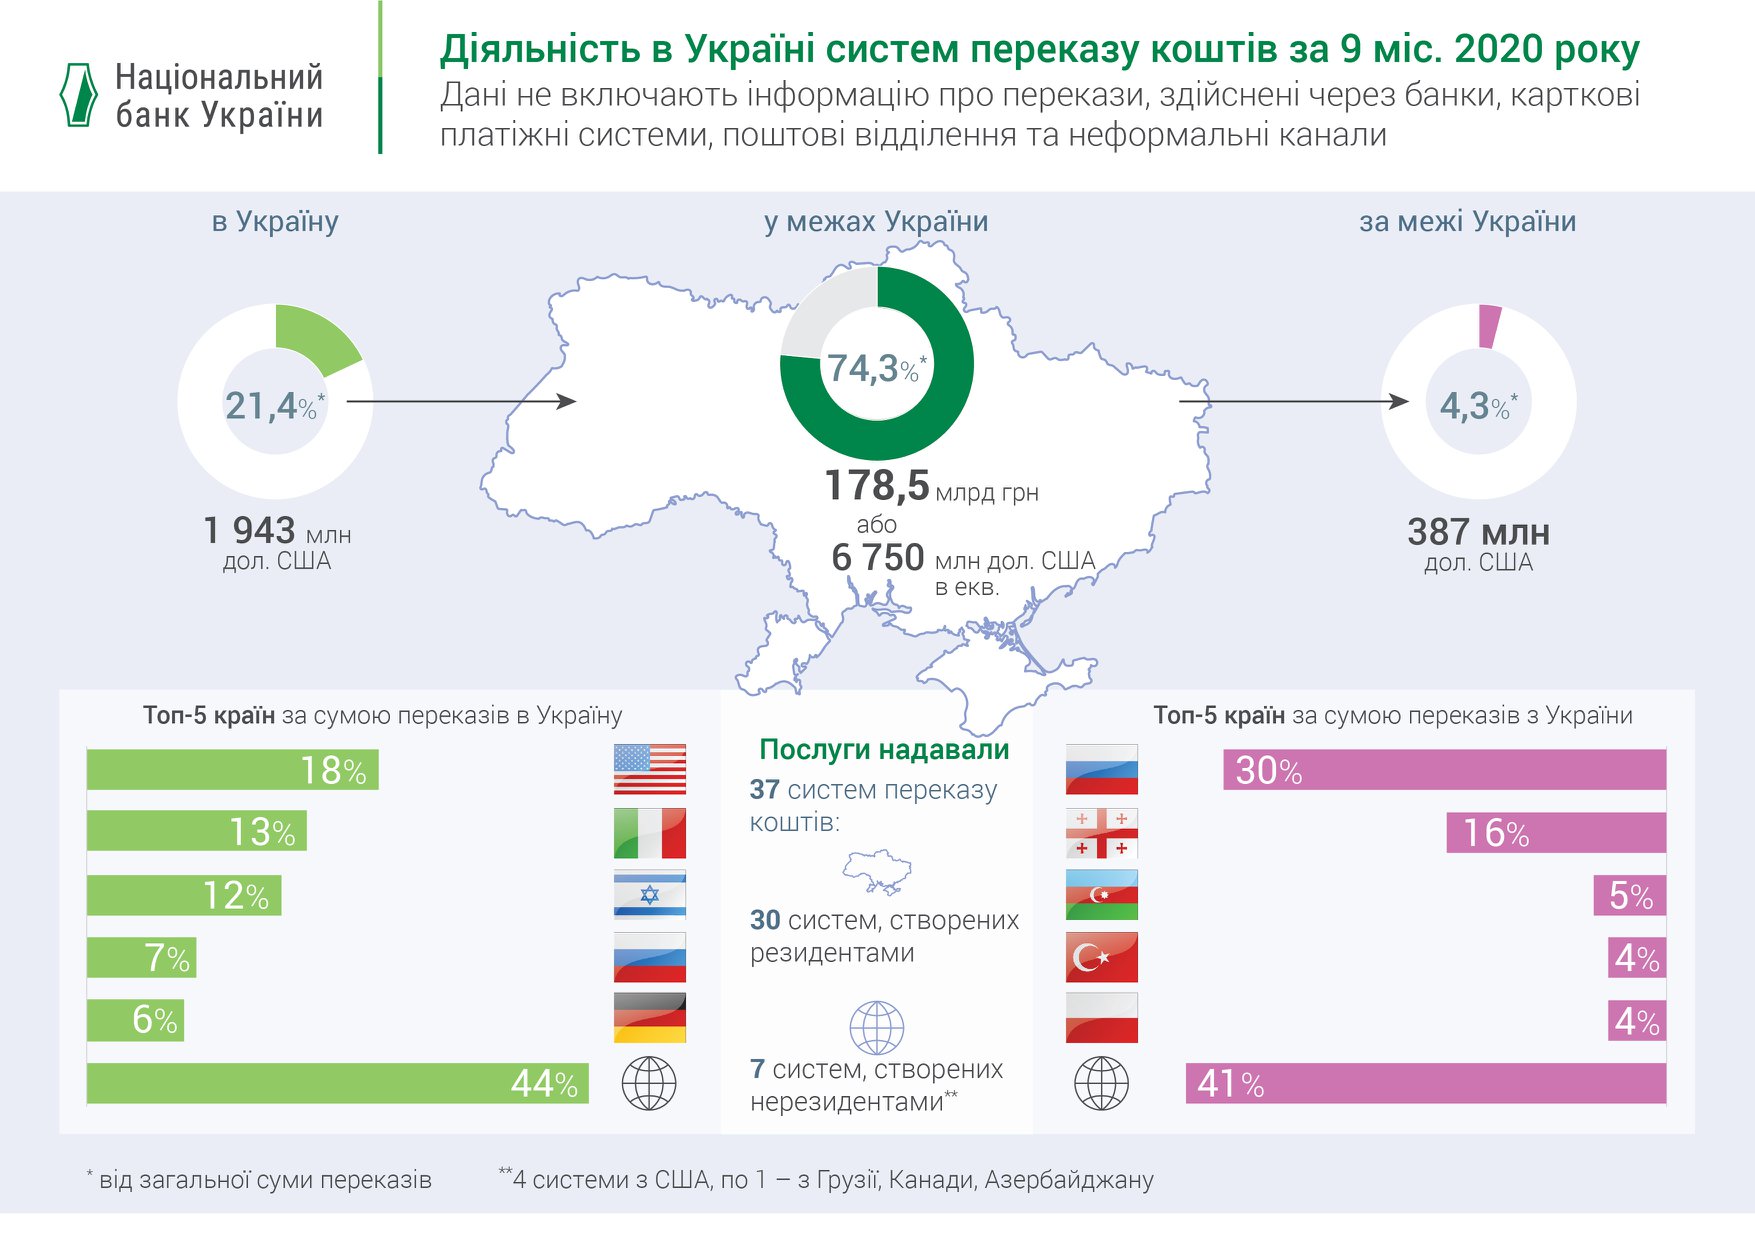 НБУ назвал крупнейших получателей денежных переводов из Украины